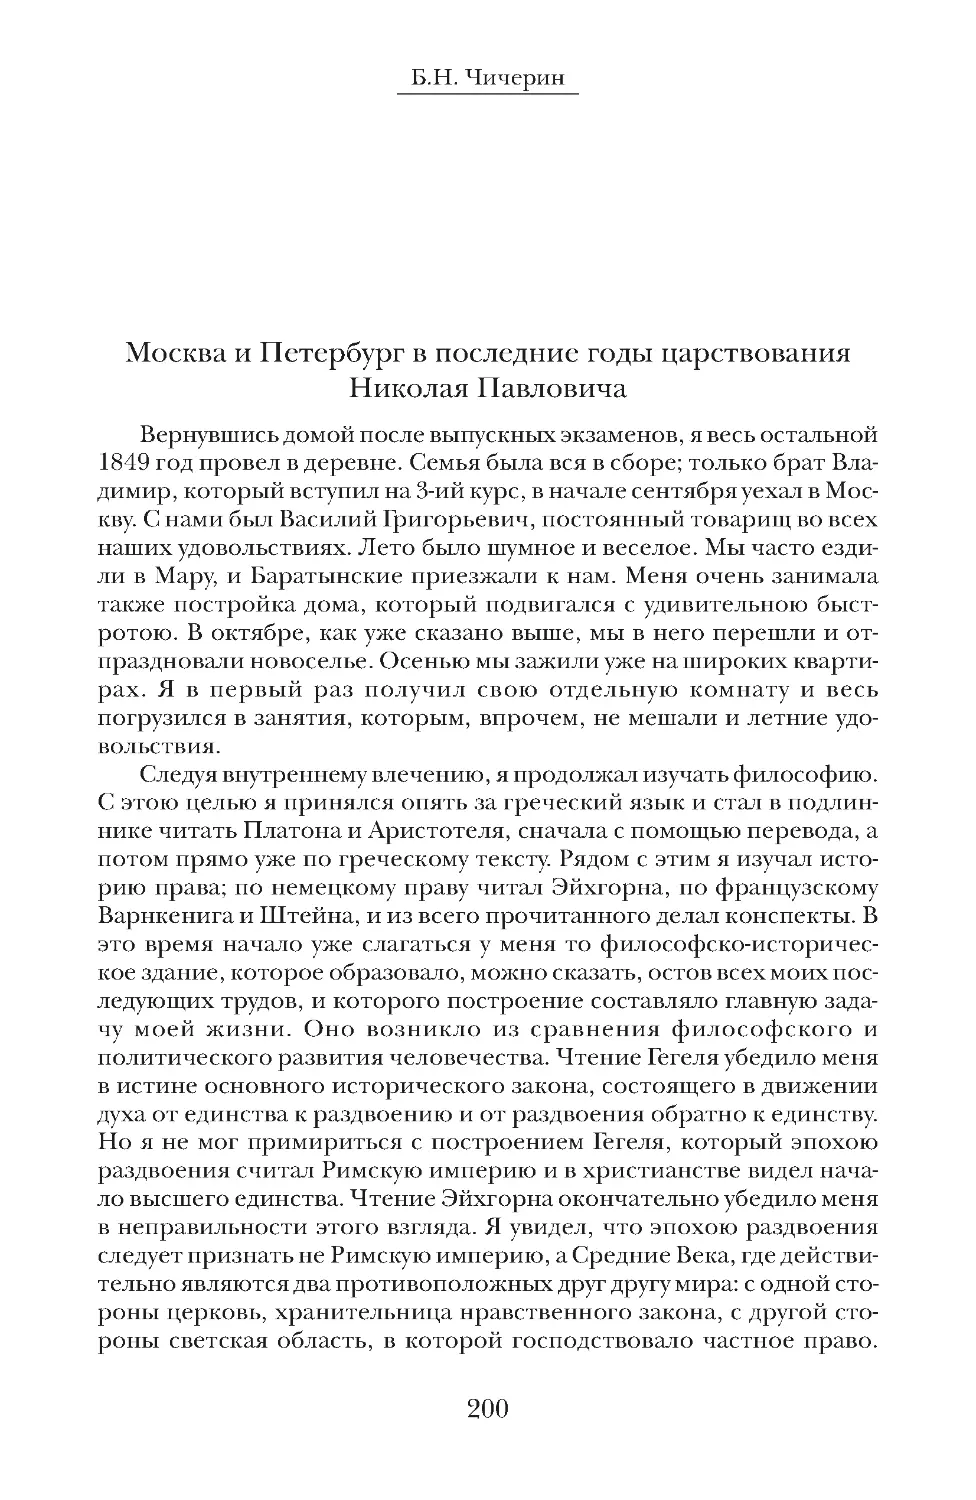 Москва и Петербург в последние годы царствования Николая Павловича